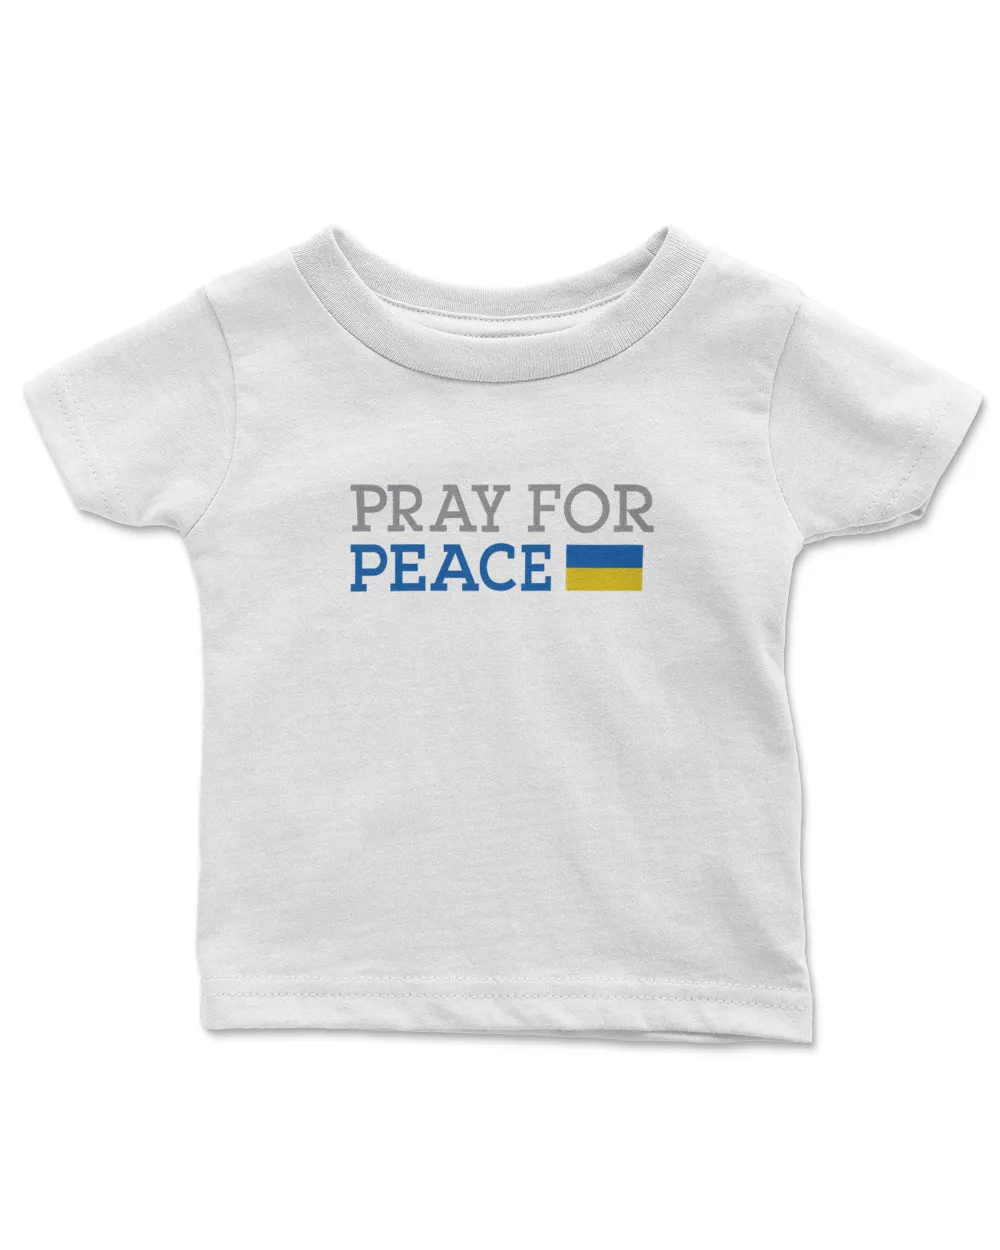 Pray For Peace T Shirt For Ukraine